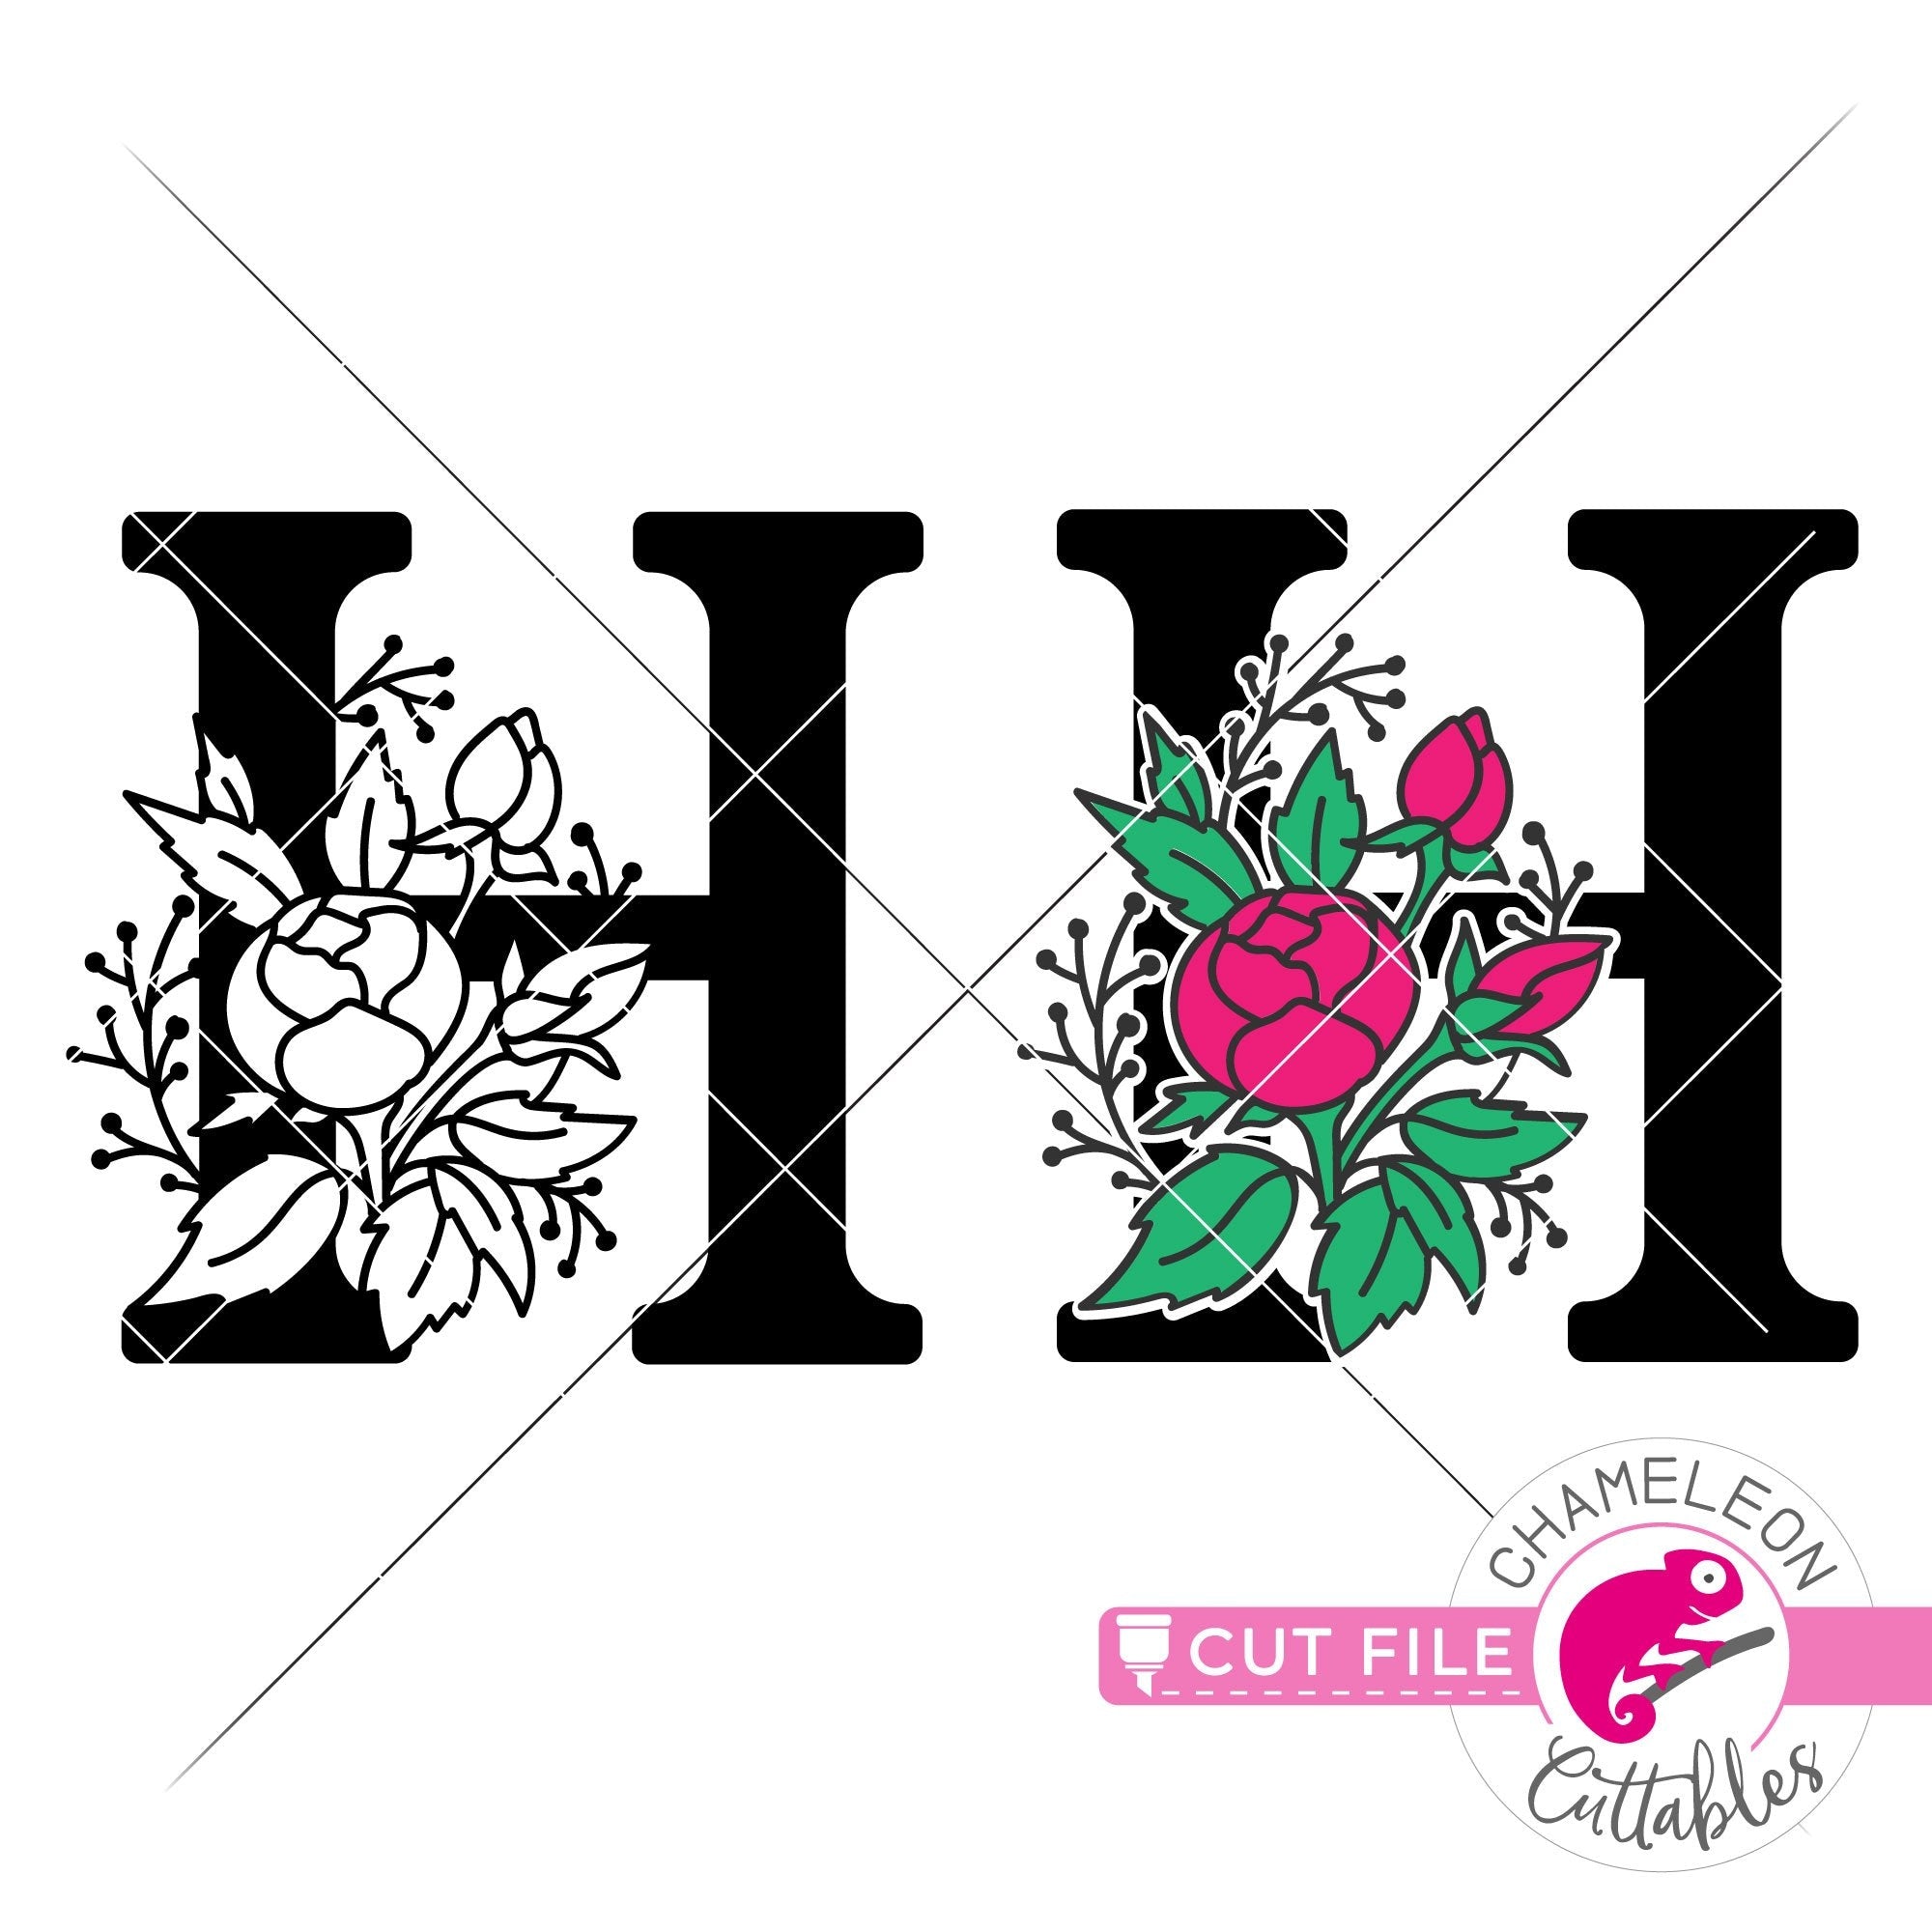 Download H Floral Monogram Letter With Flowers Svg Png Dxf Eps Jpeg Chameleon Cuttables Llc Chameleon Cuttables Llc